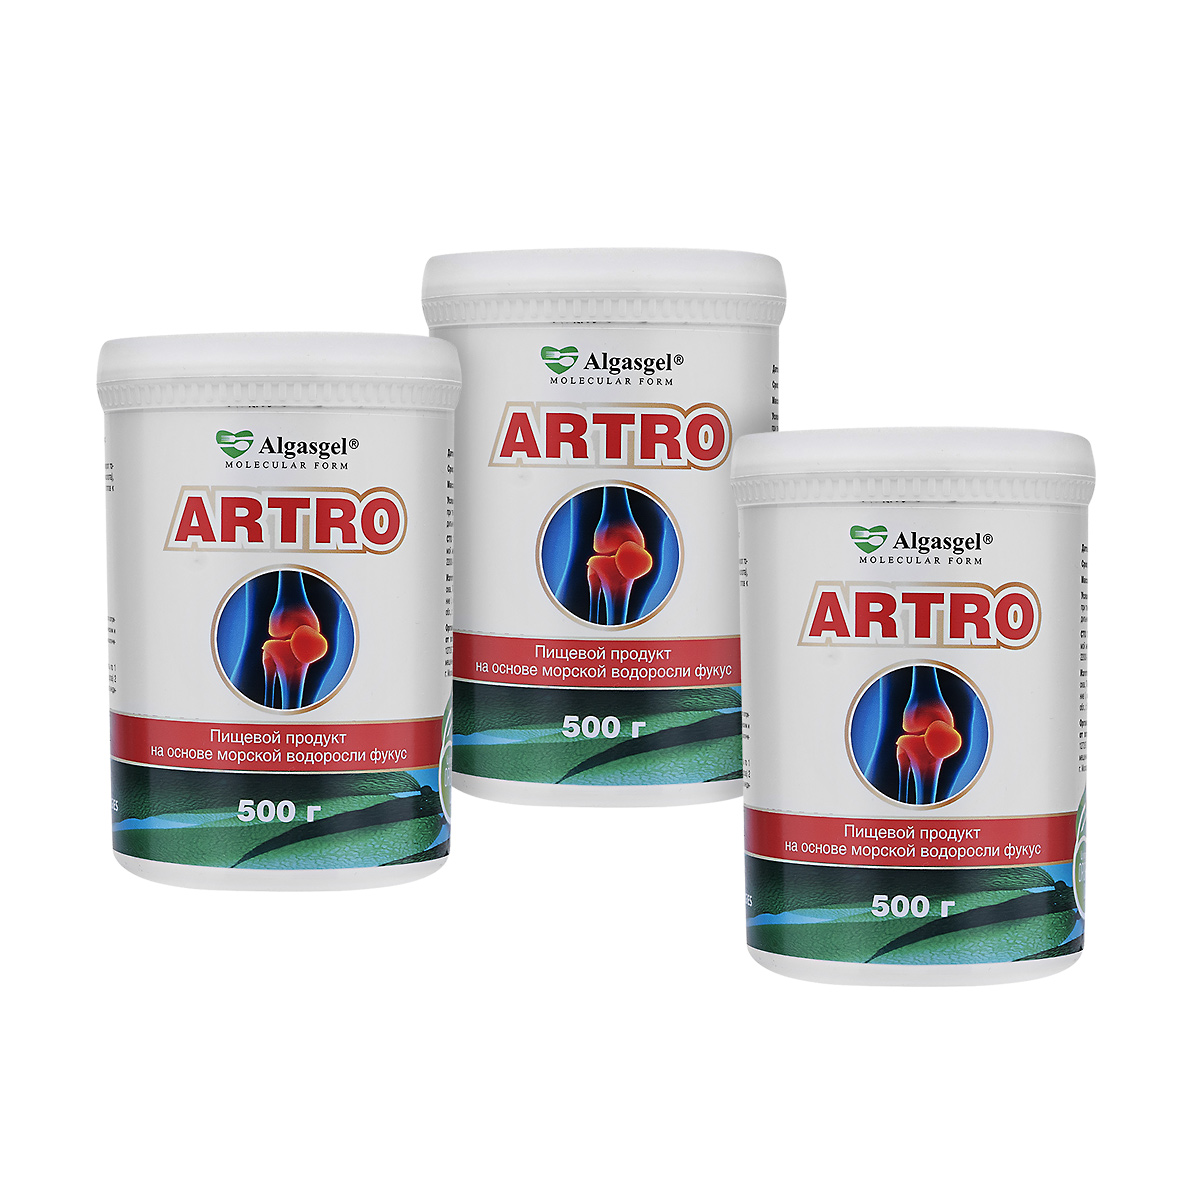 Algasgel Artro для здоровья суставов и мышц (2 уп. по 500 г + 1 в подарок)